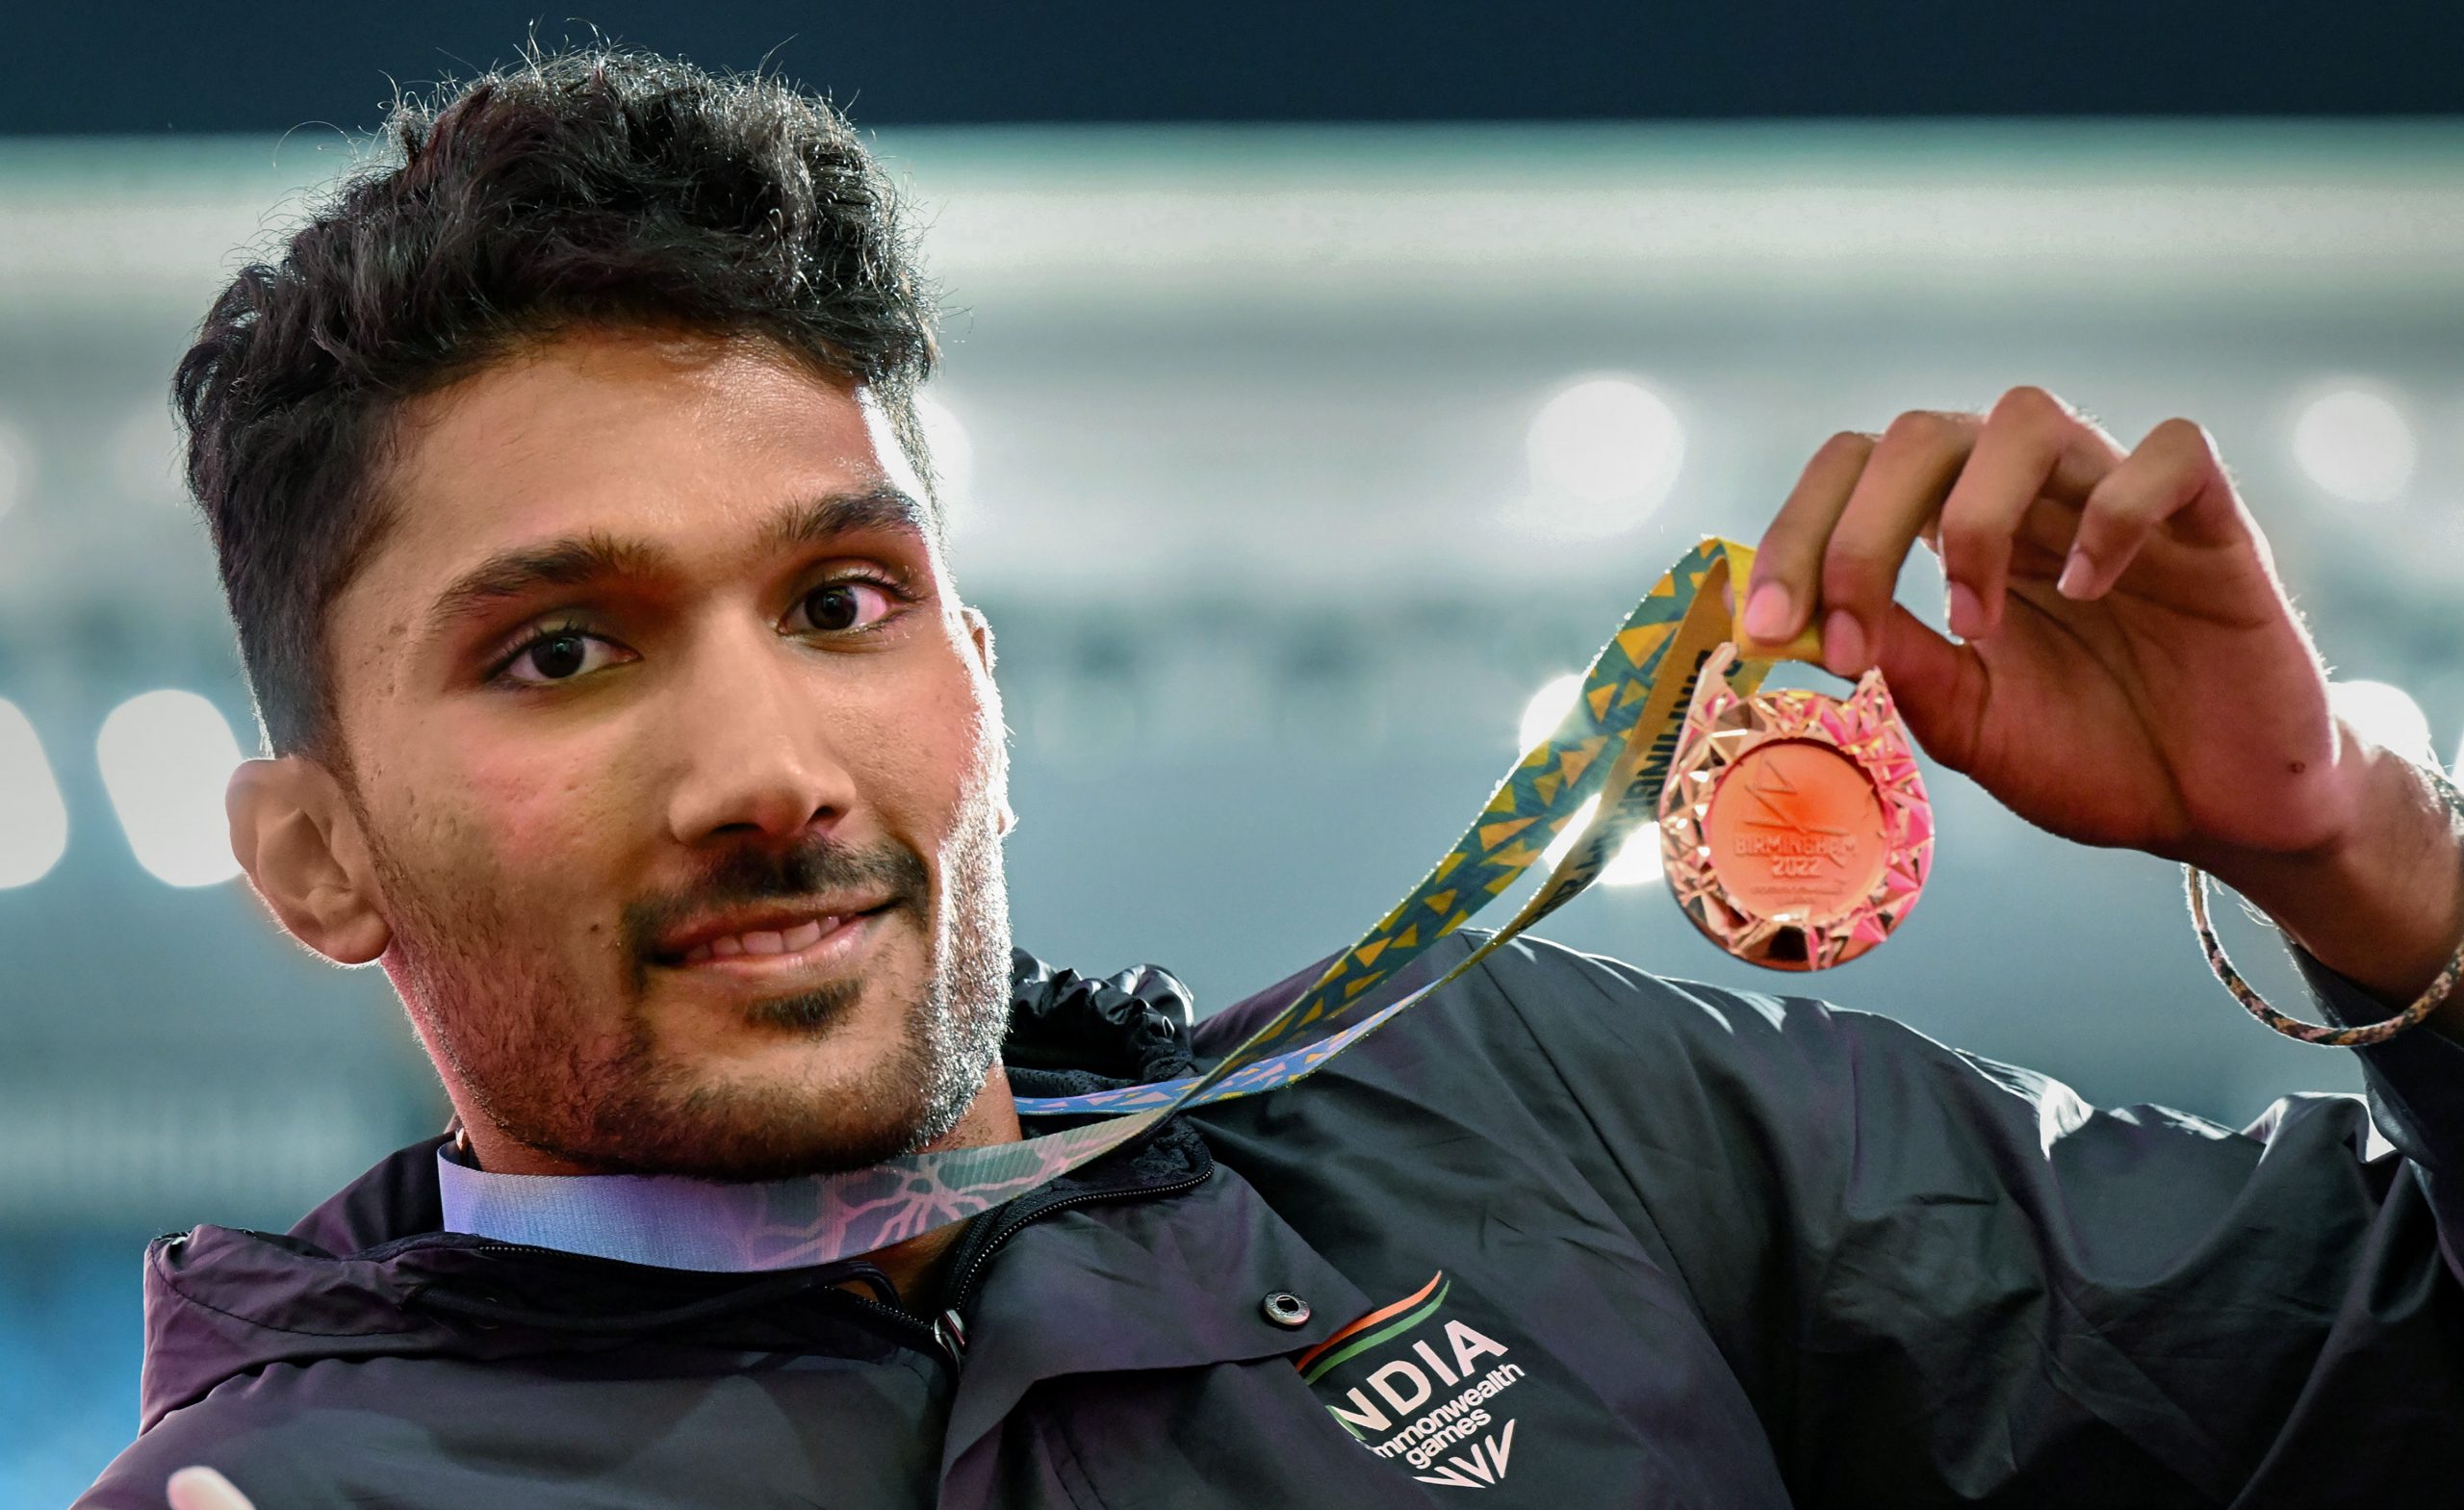 CWG 2022: ऐतिहासिक पदक जीतने वाले एथलीट तेजस्विन शंकर के बारे में जानिए